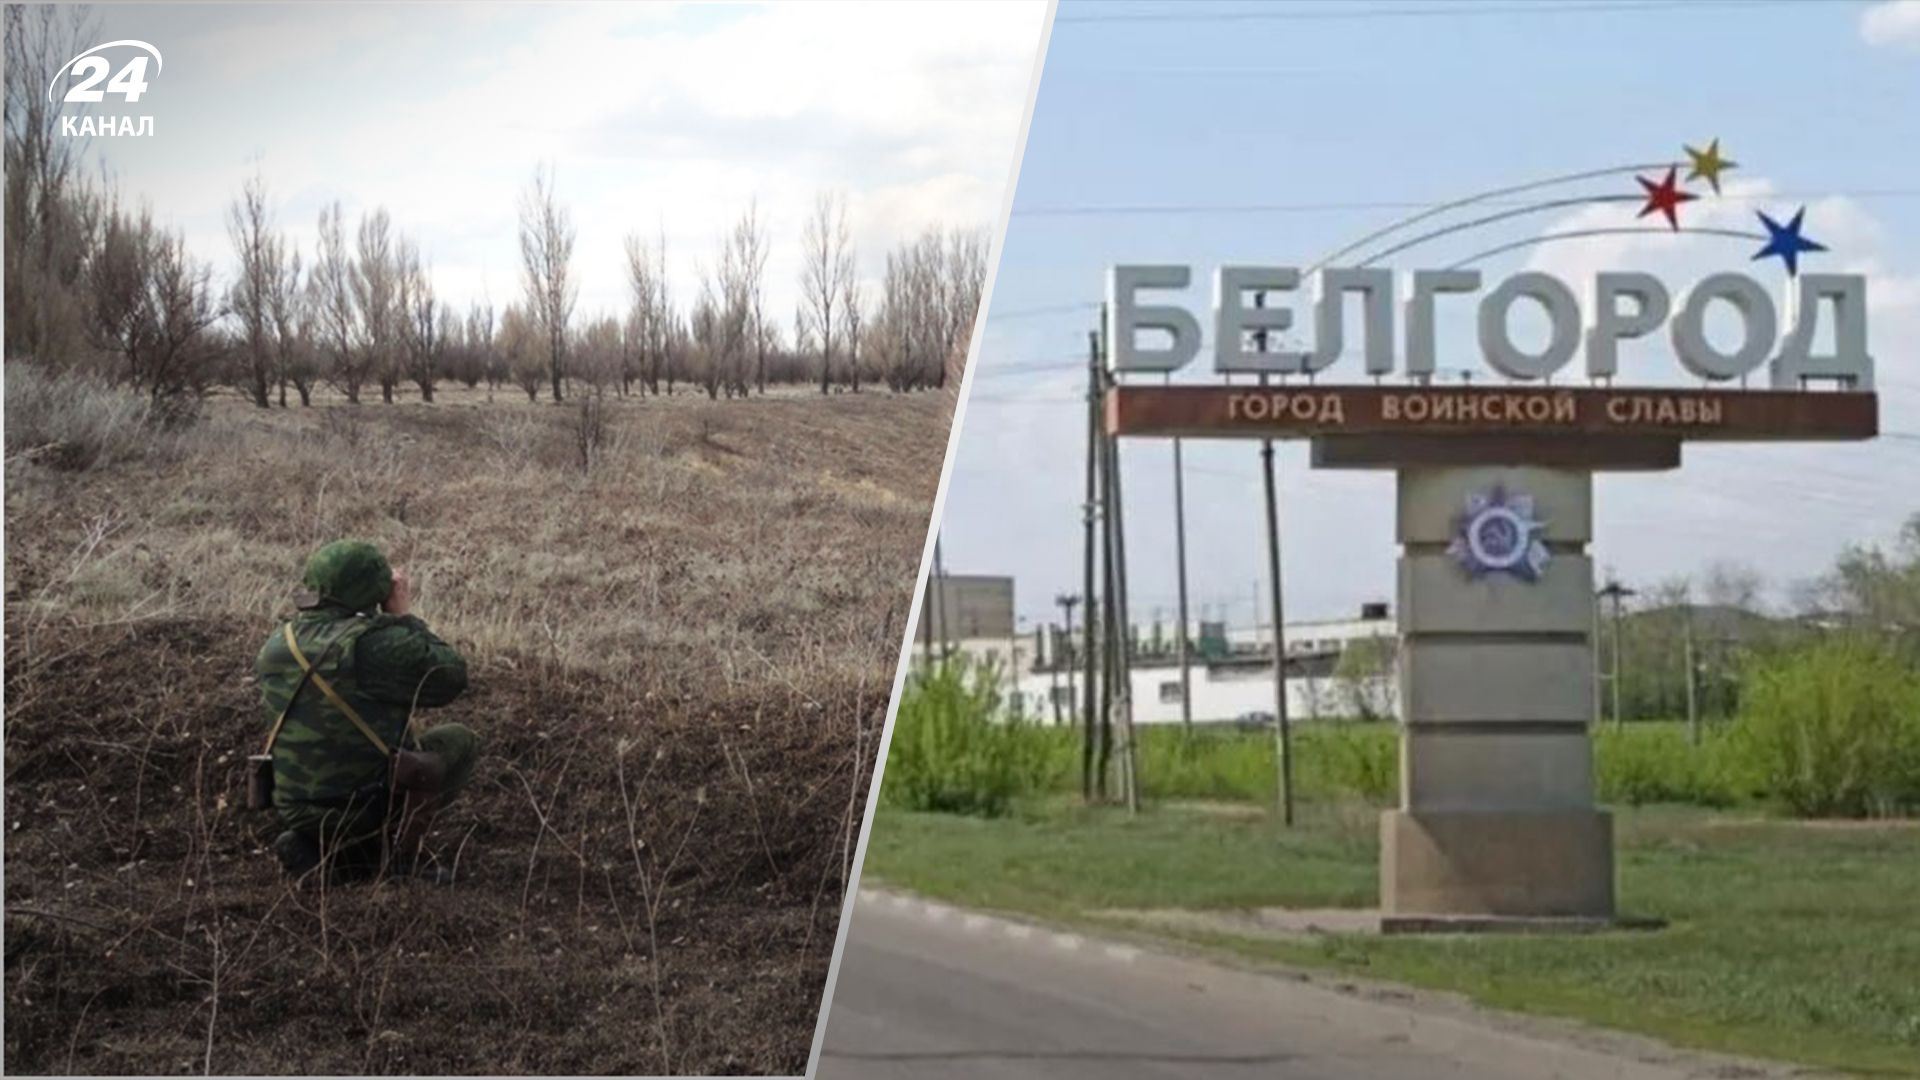 Пограничники скрываются позади: СМИ раскрыли, кто действительно защищает Белгородскую область от РДК - 24 Канал